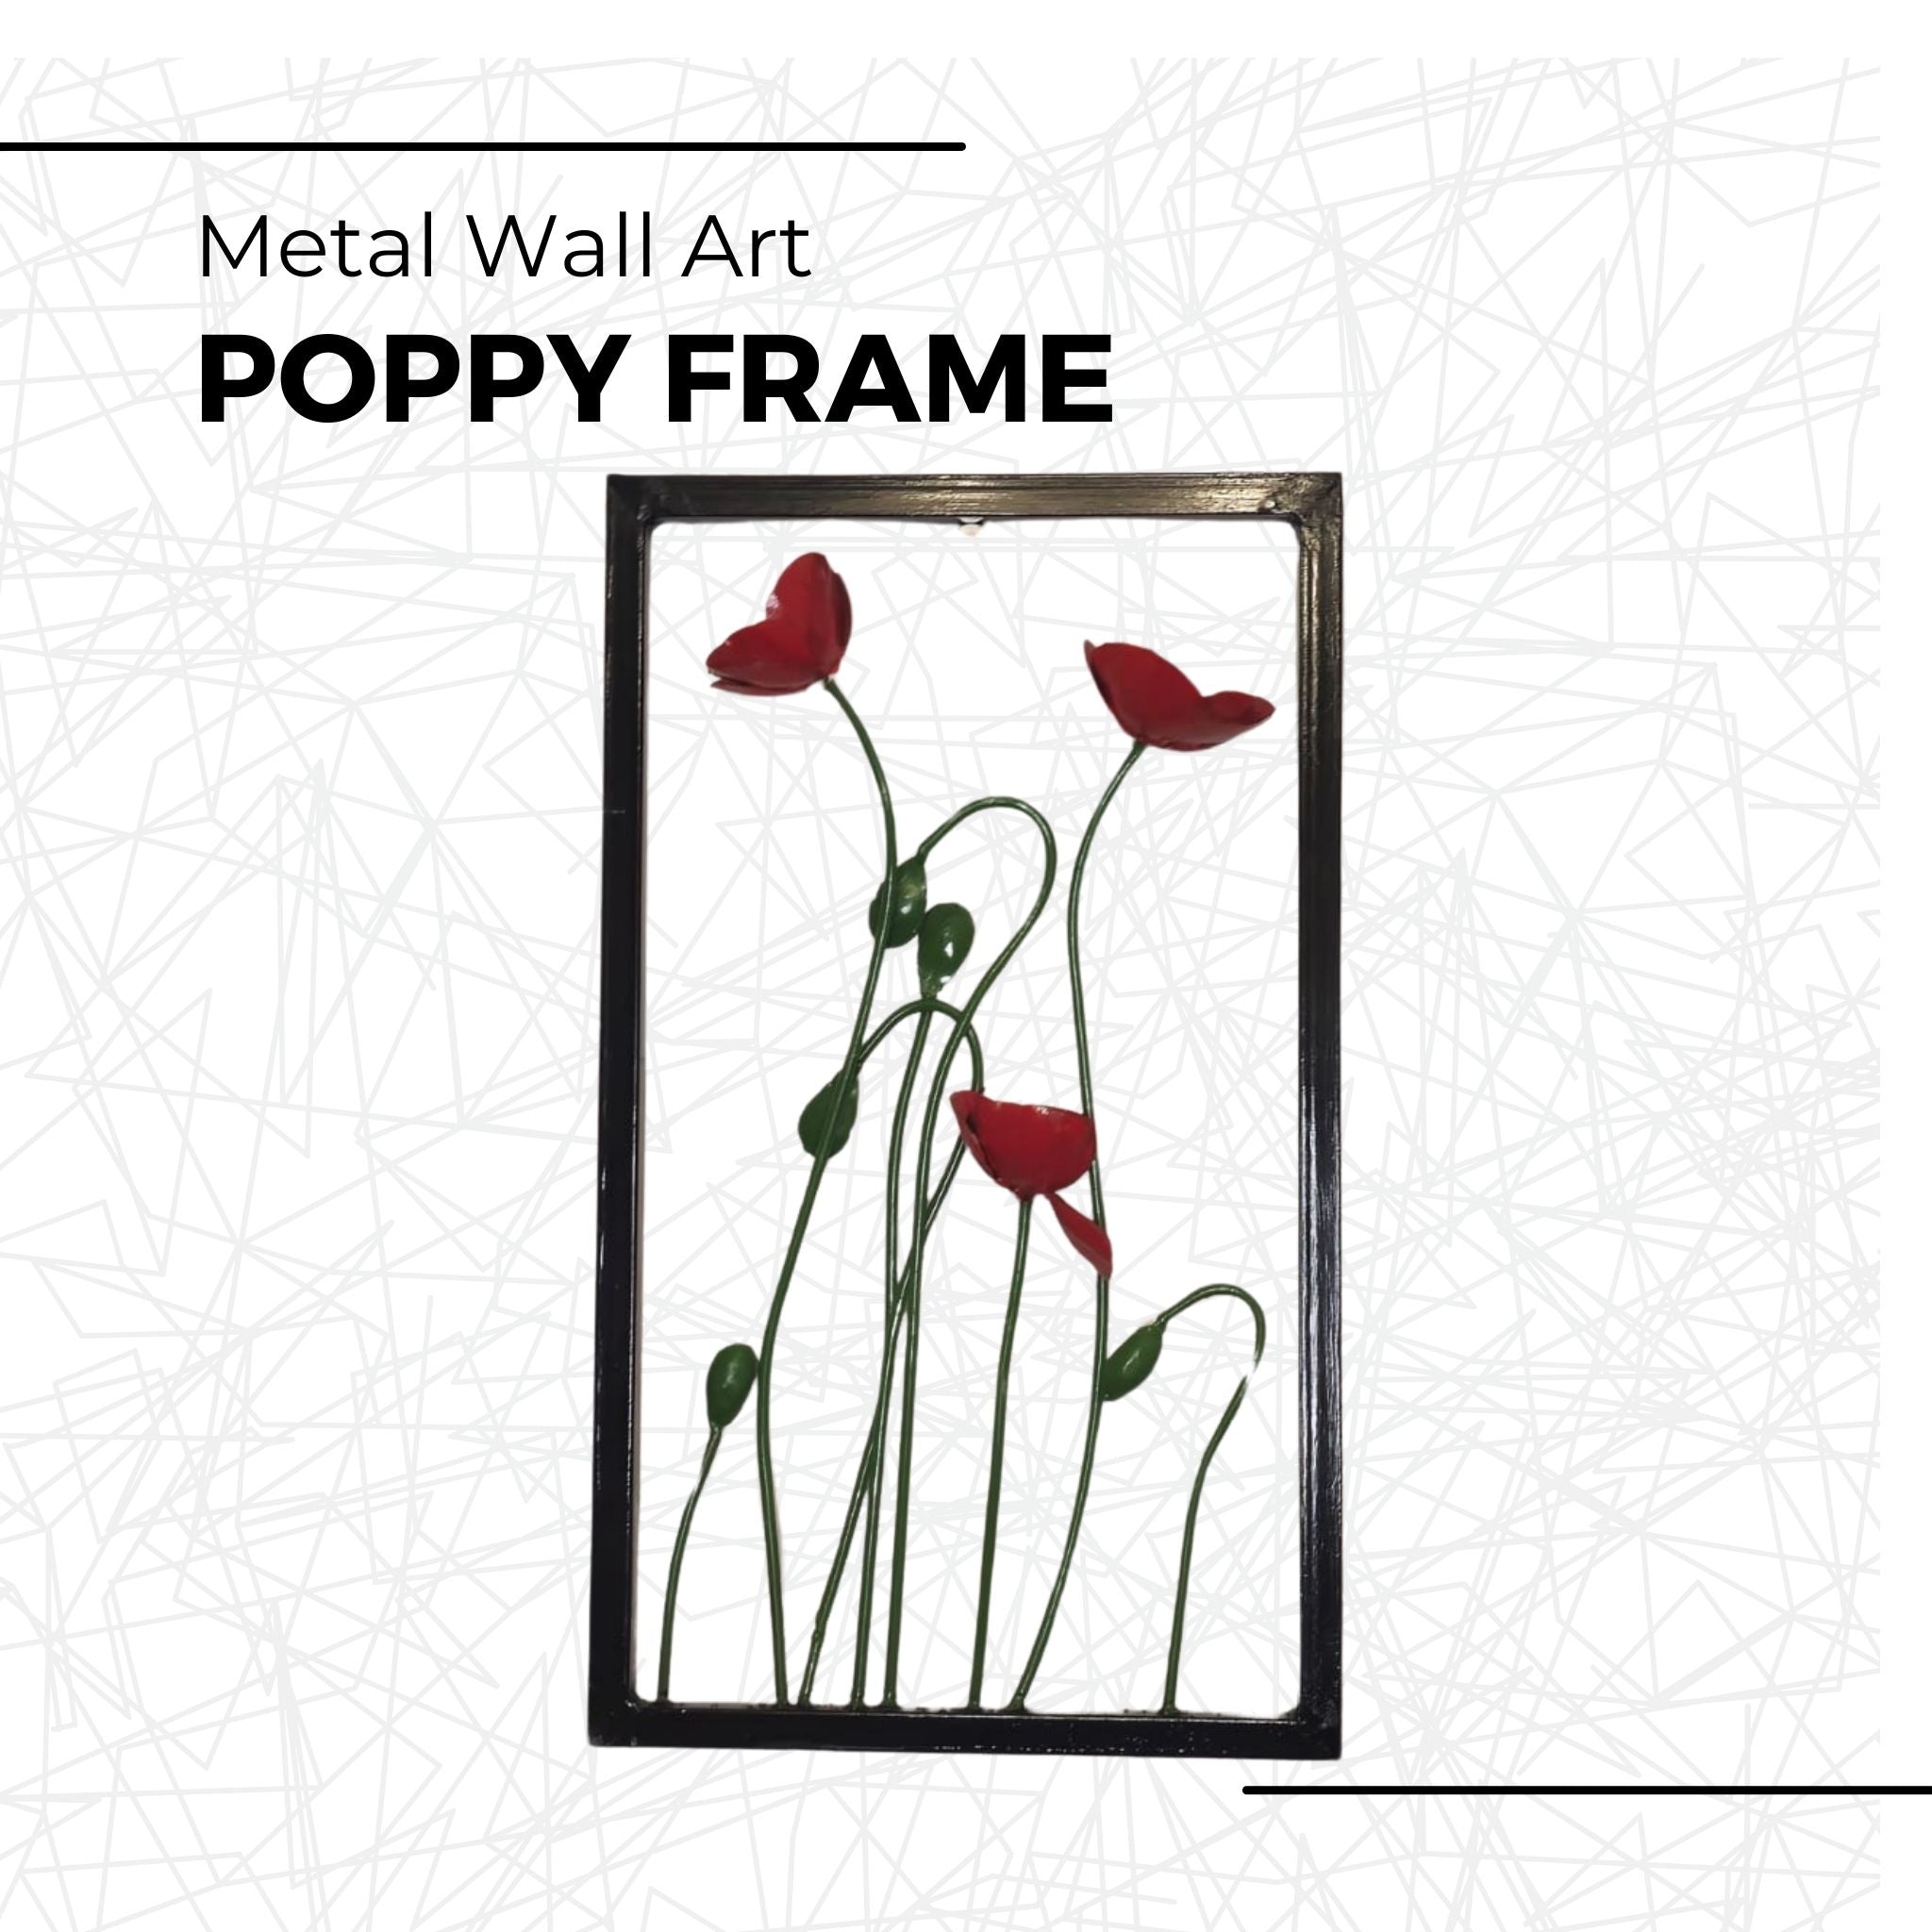 Poppy Frame - Pangea Sculptures